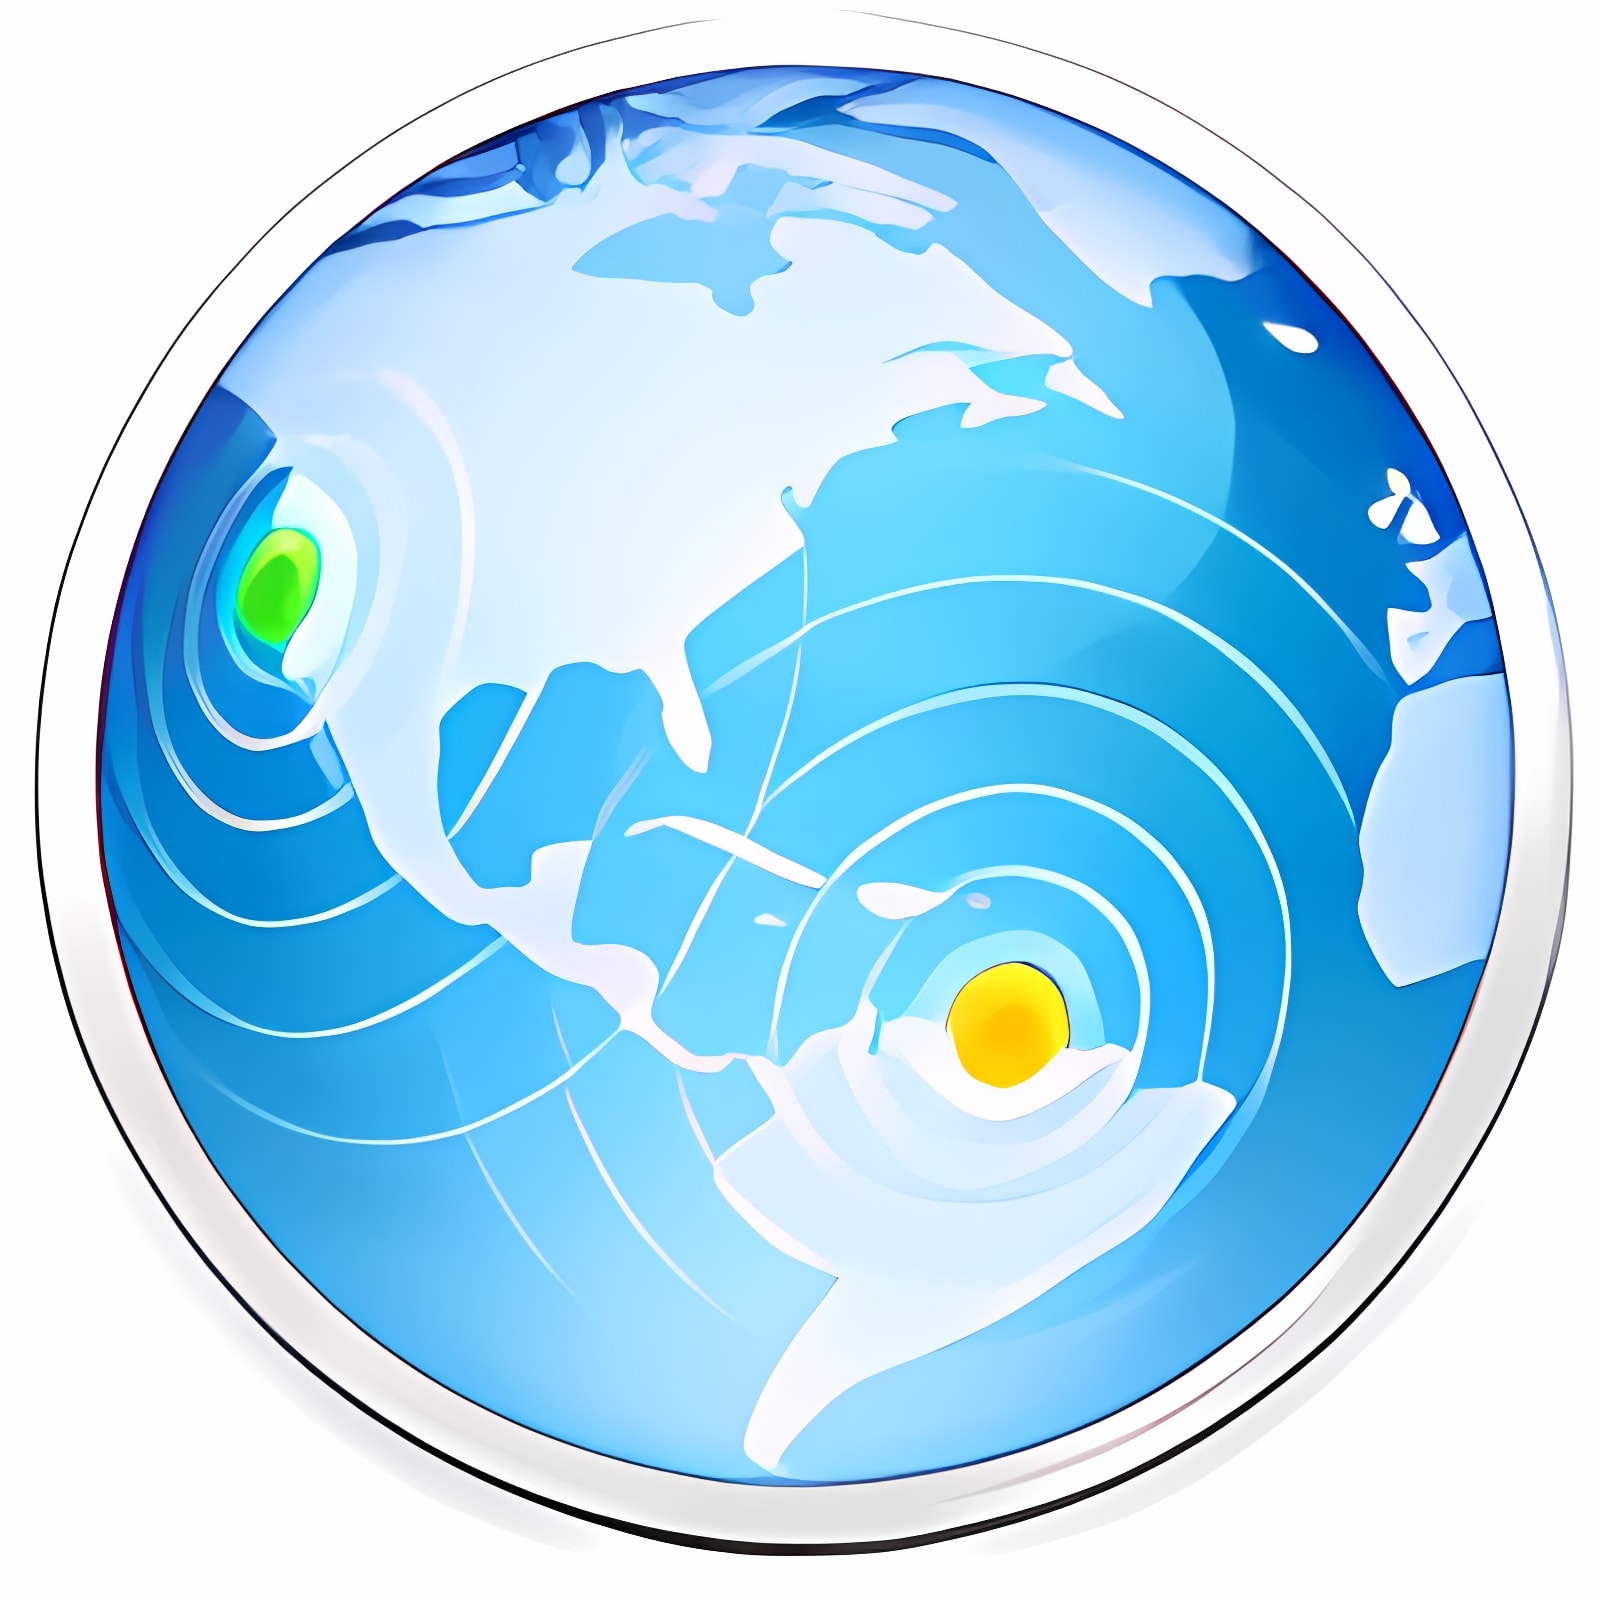 Herunterladen OS X Server Installieren Sie Neueste App Downloader